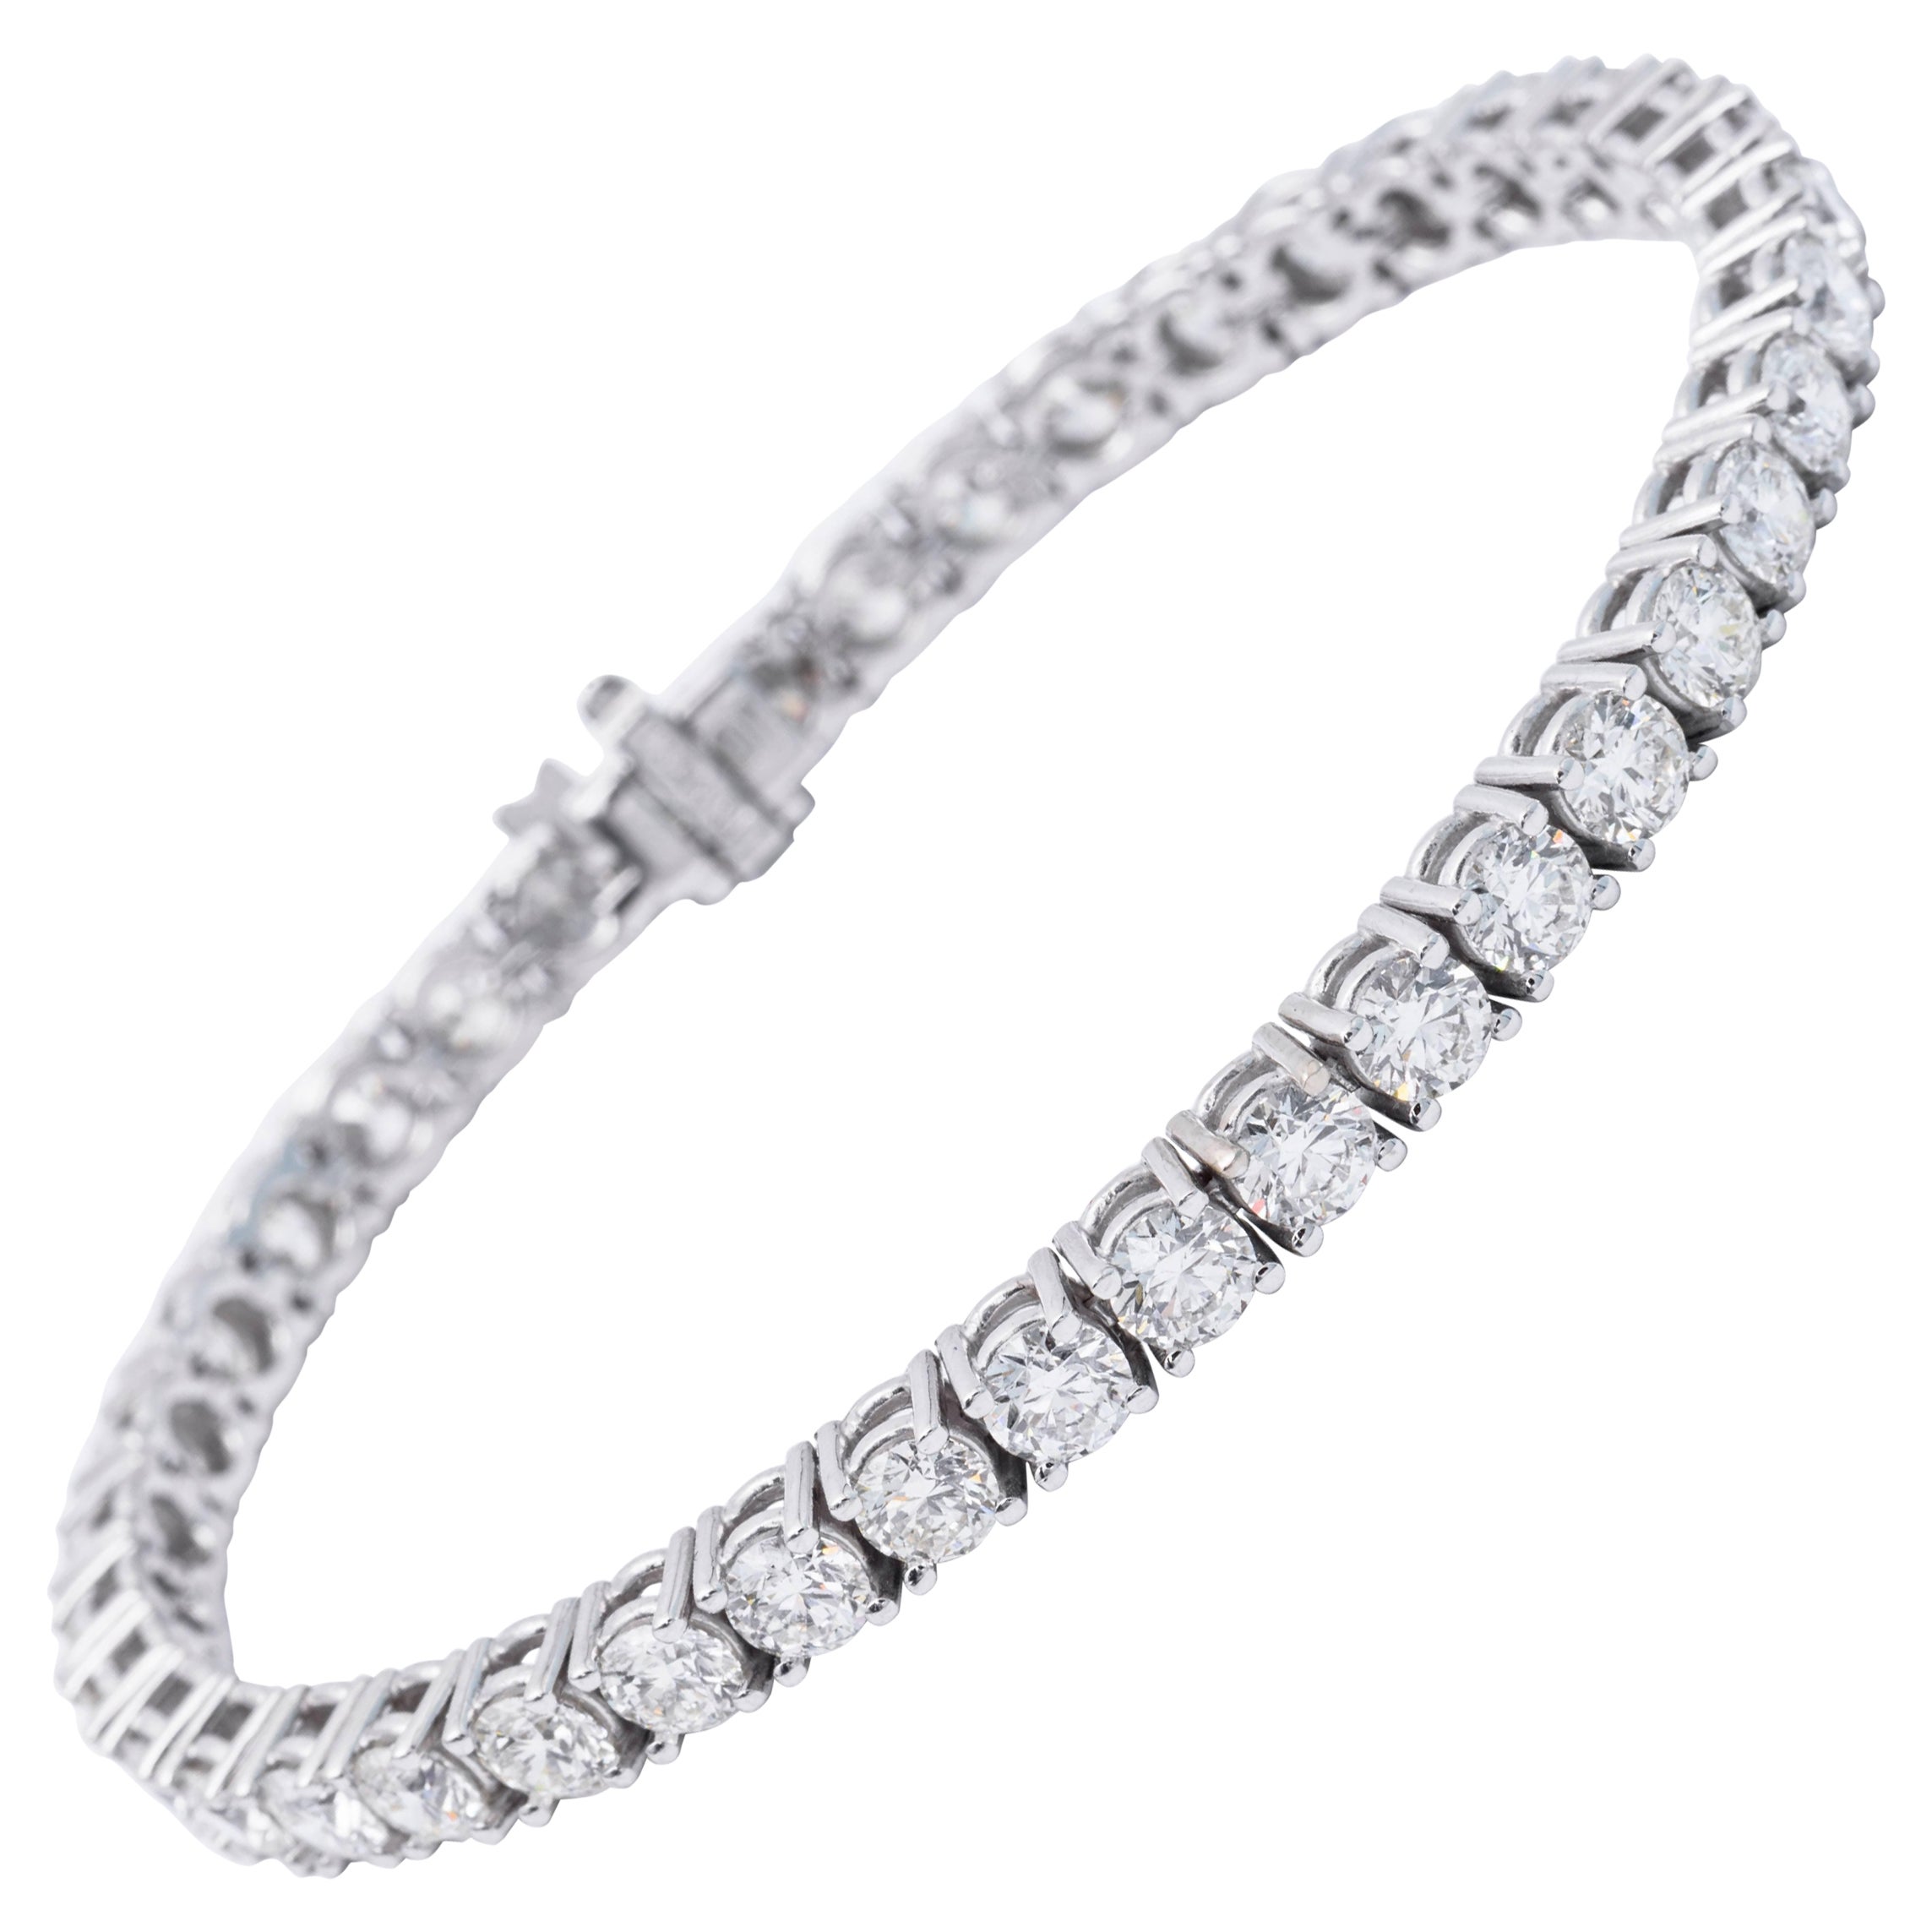 Bracelet tennis en or blanc 14 carats avec diamants de 5 carats d'une valeur moyenne de 0,10 carat